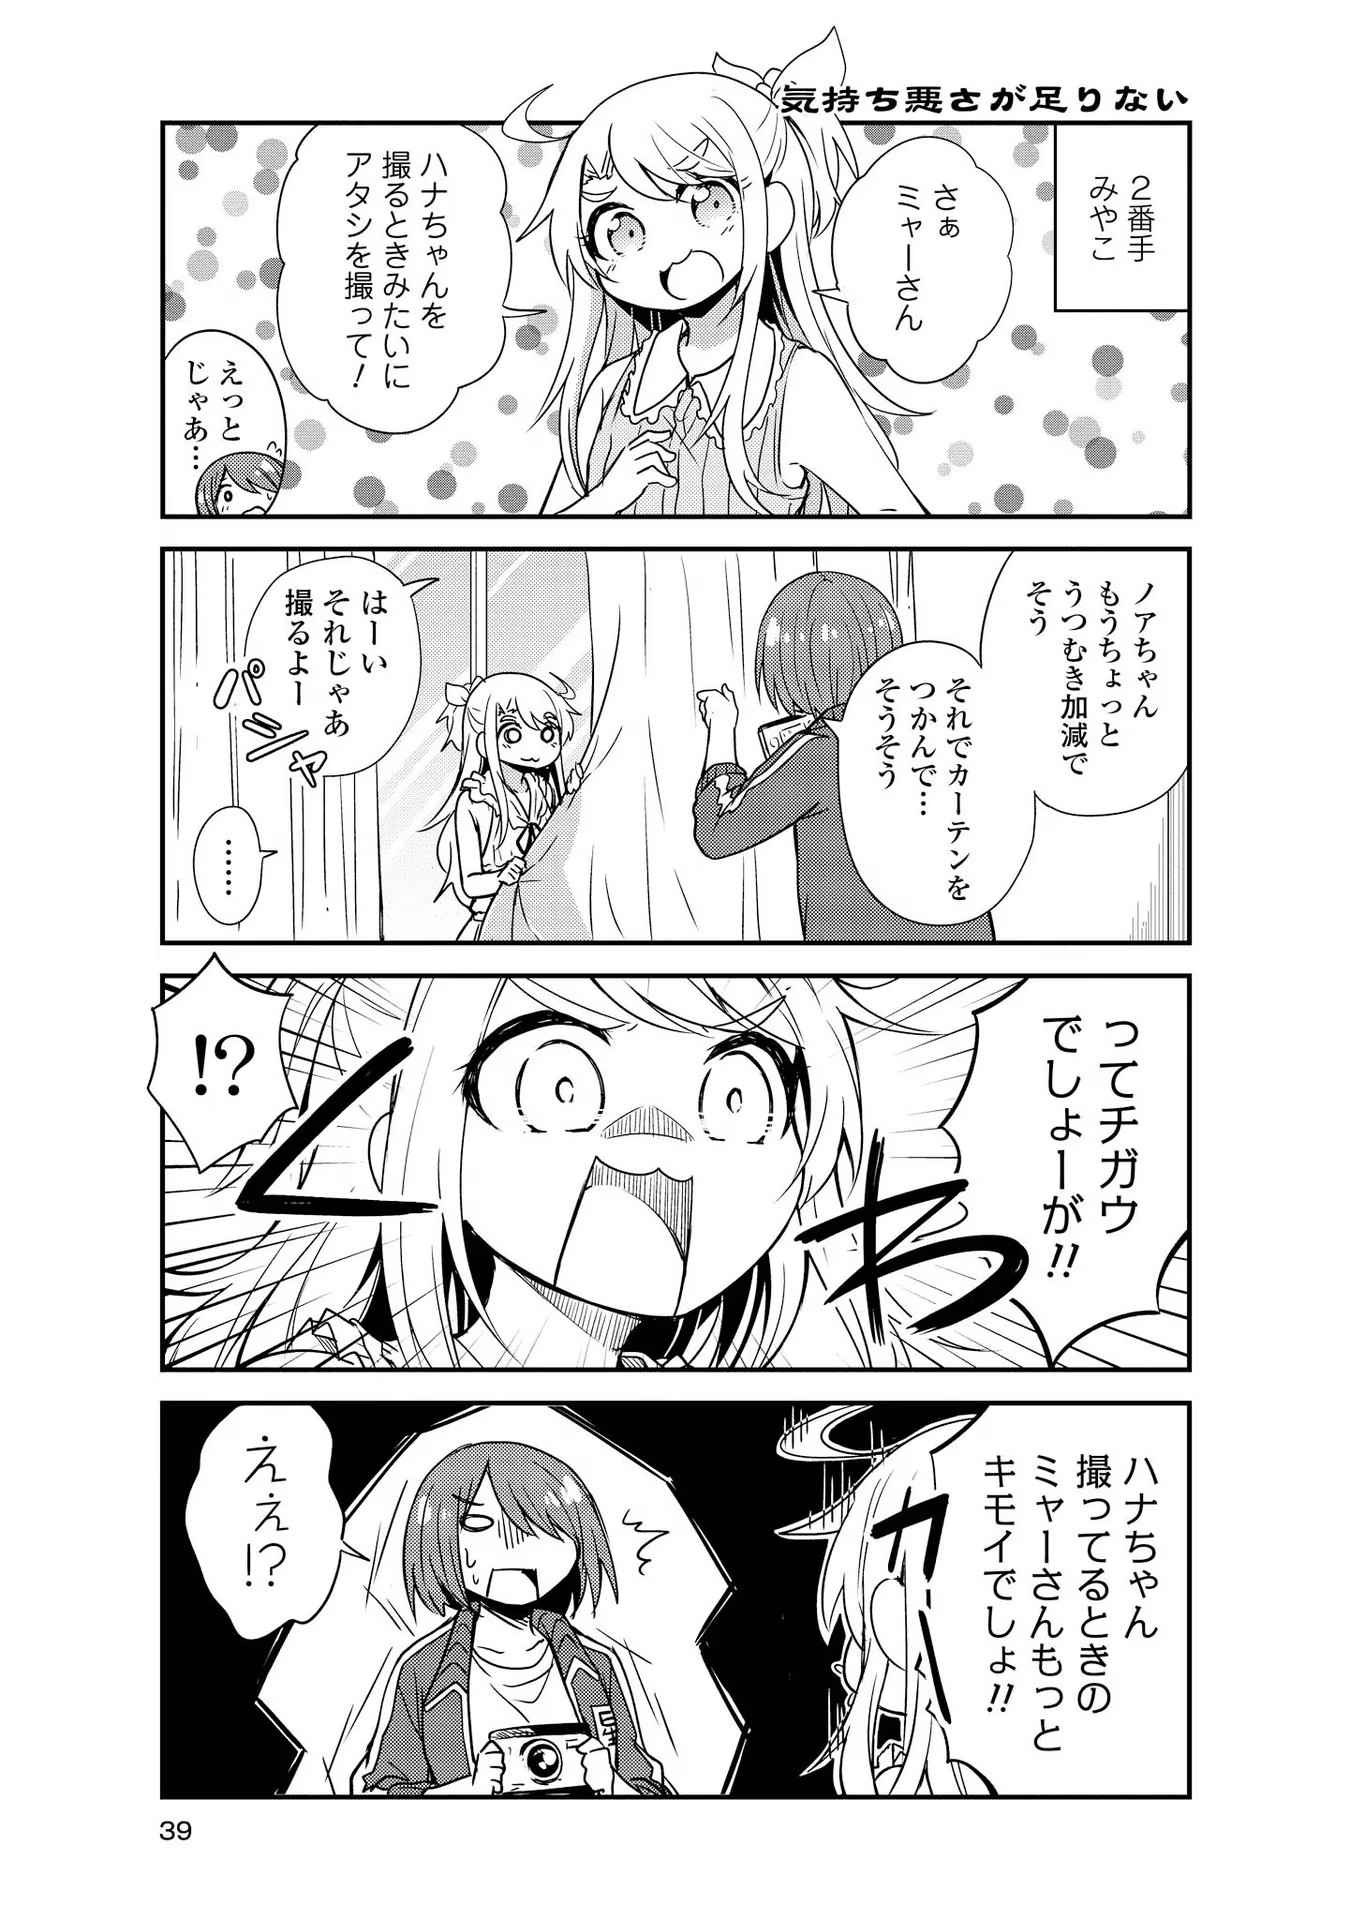 Watashi ni Tenshi ga Maiorita! - Chapter 23 - Page 5